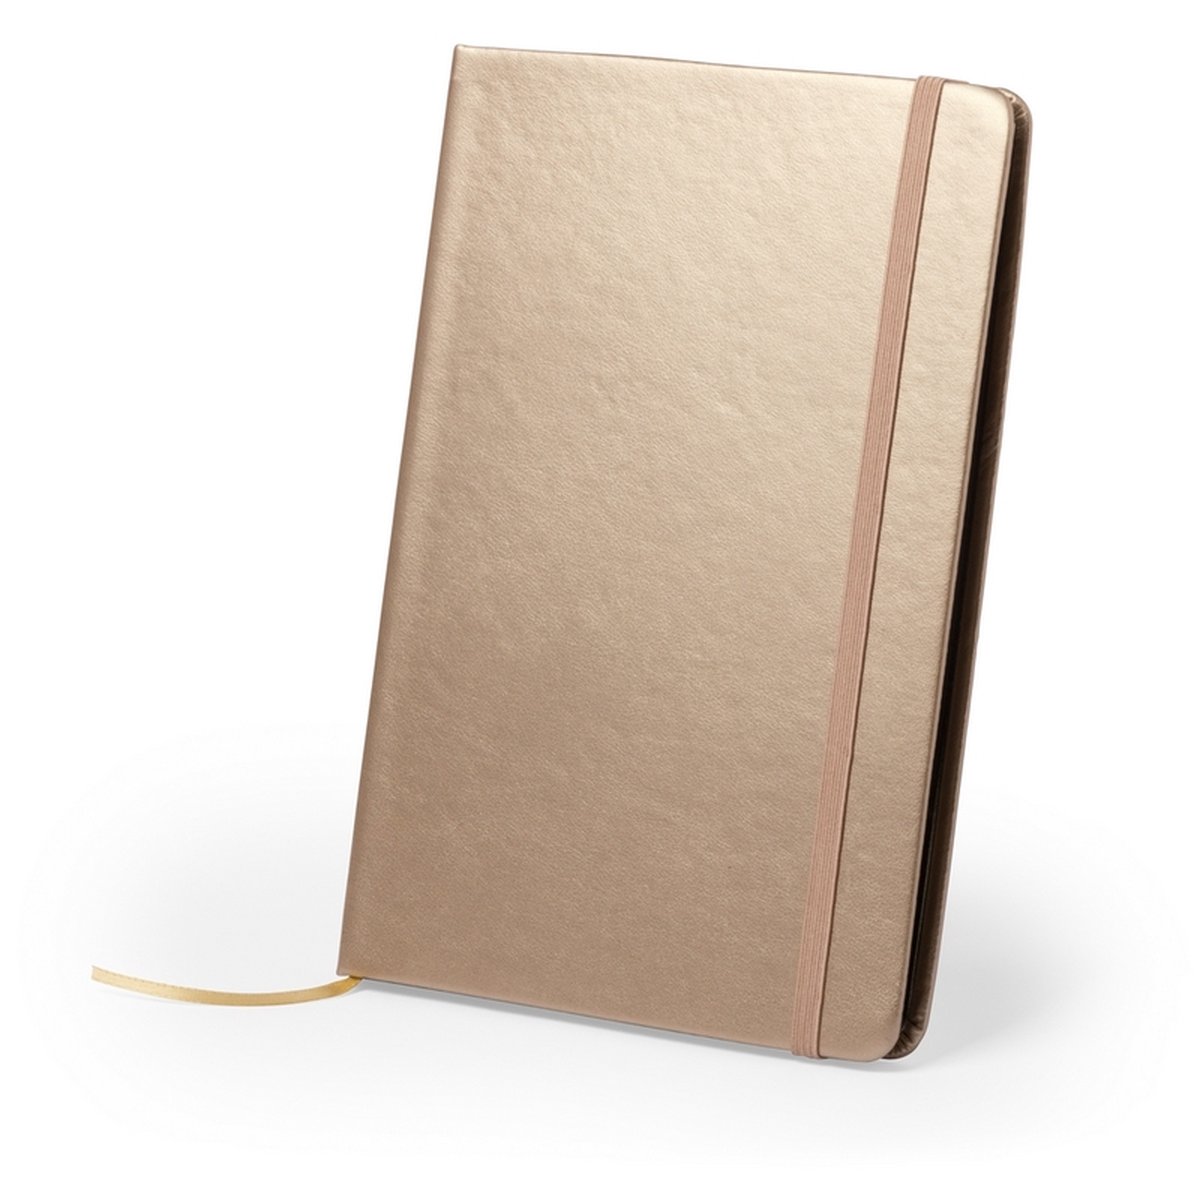 The Root - Notebook / Notitieboek A5 - In de trendy kleur goud gold - Ook te gebruiken als gastenboek